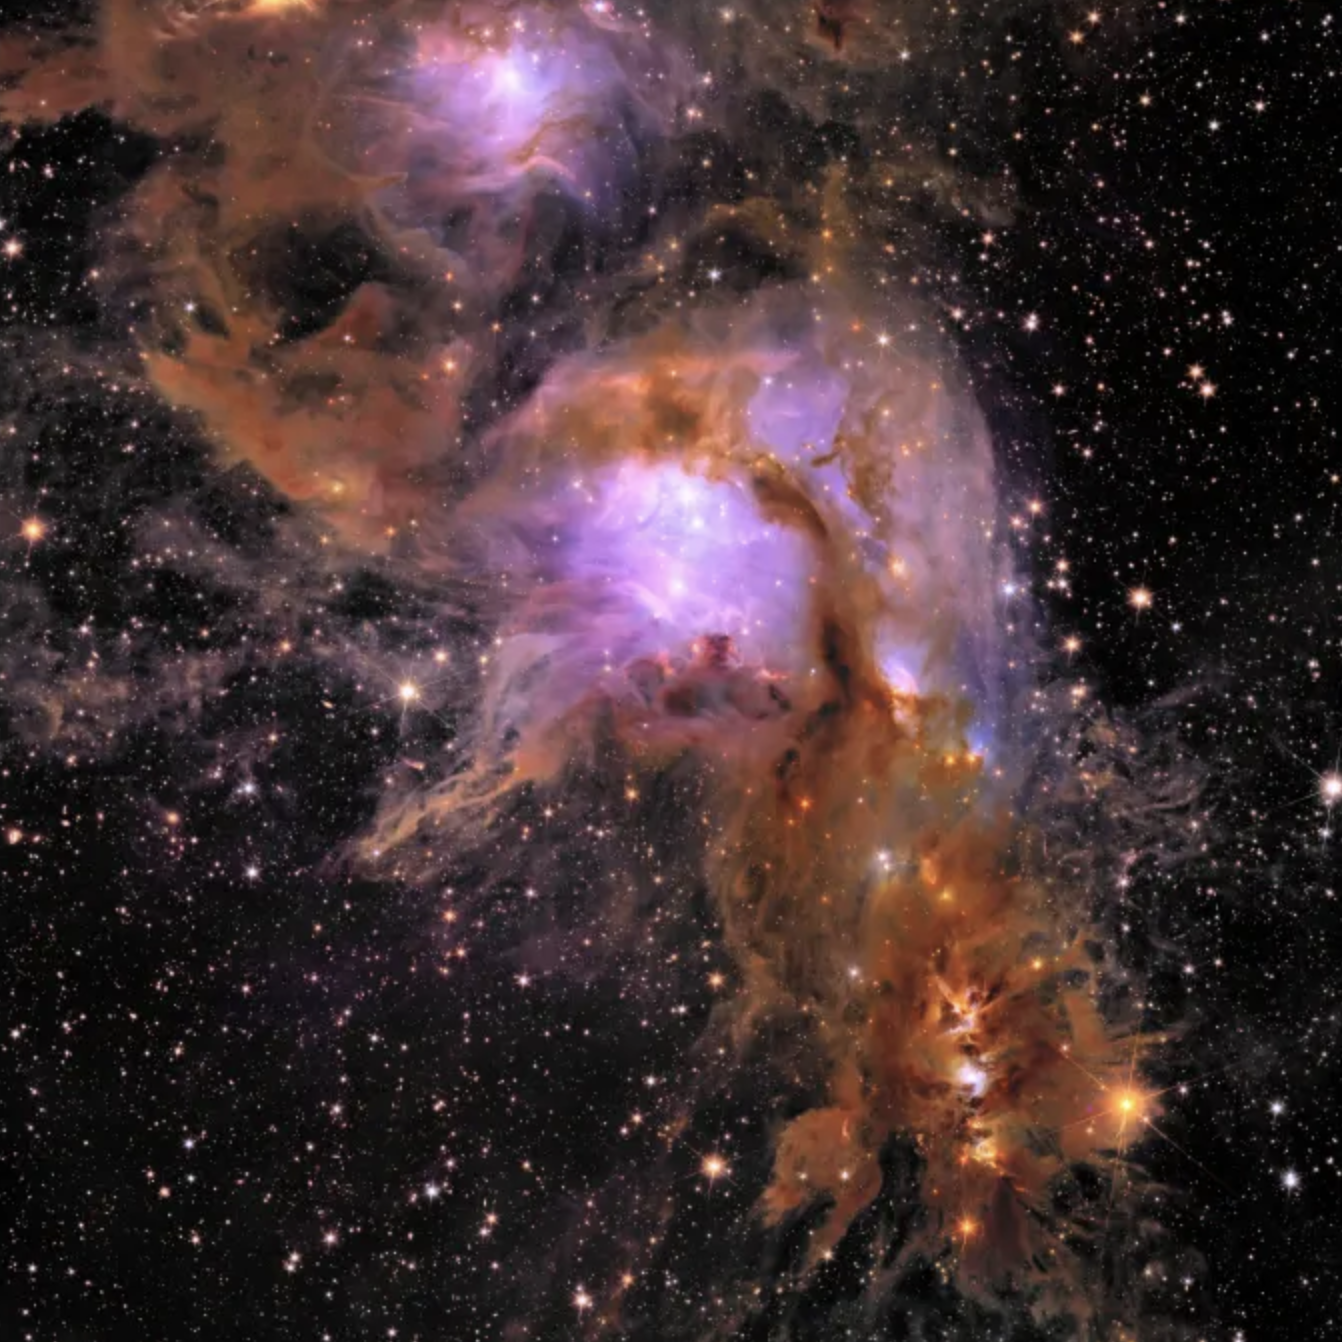 Esta imagen muestra a Messier 78, un vivero de formación de estrellas envuelto en polvo interestelar, situado a 1,300 años luz de la Tierra.